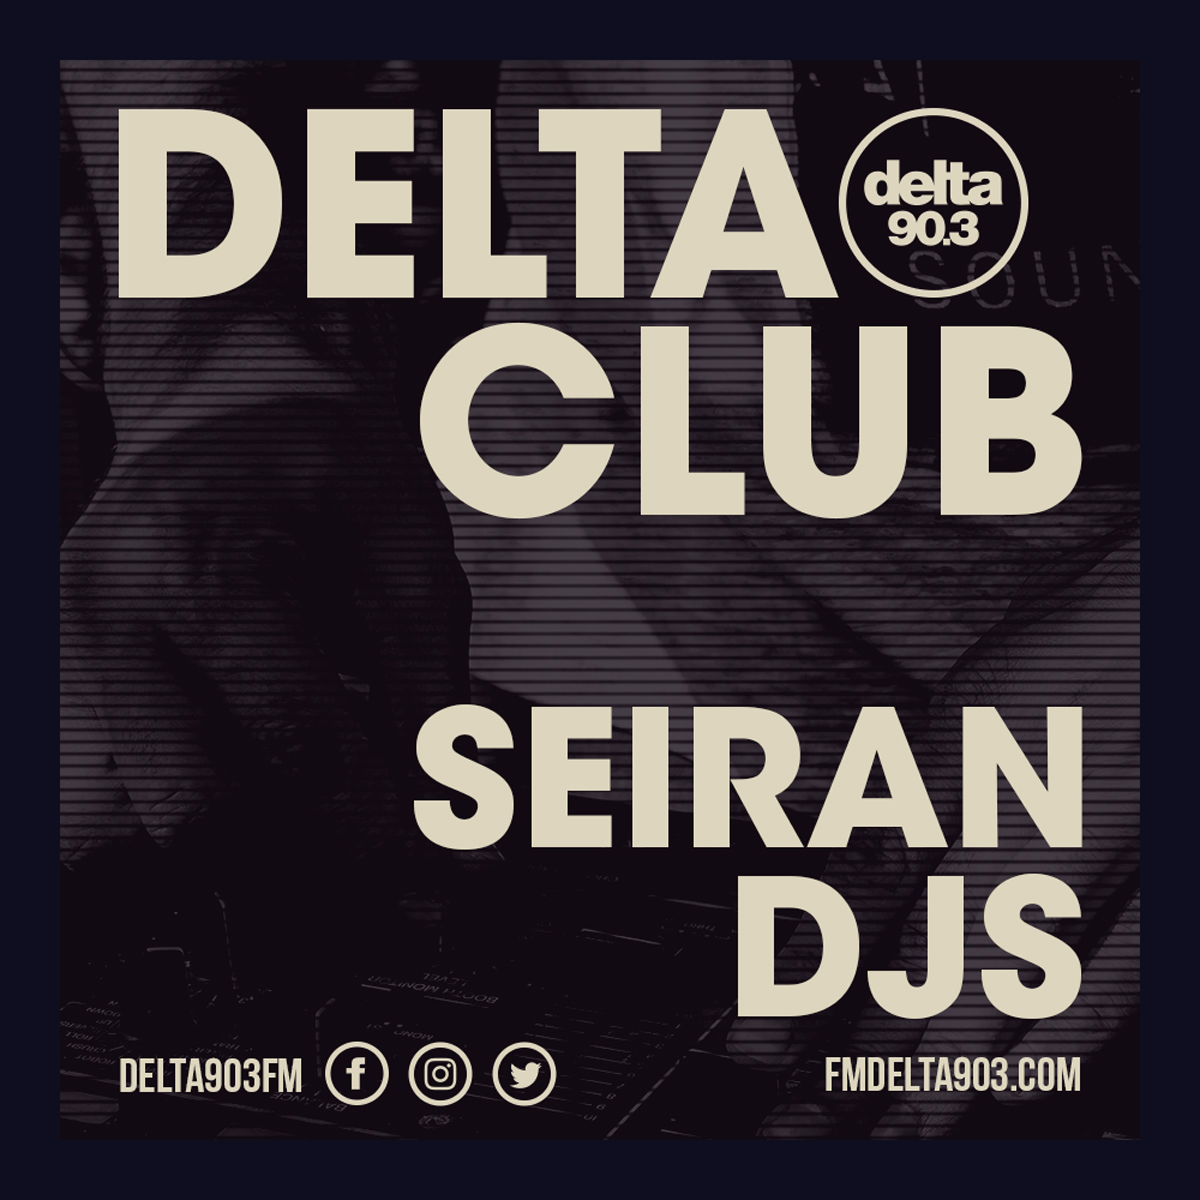 Delta Podcasts - Delta Club presents Seiran DJs (14.05.2018)